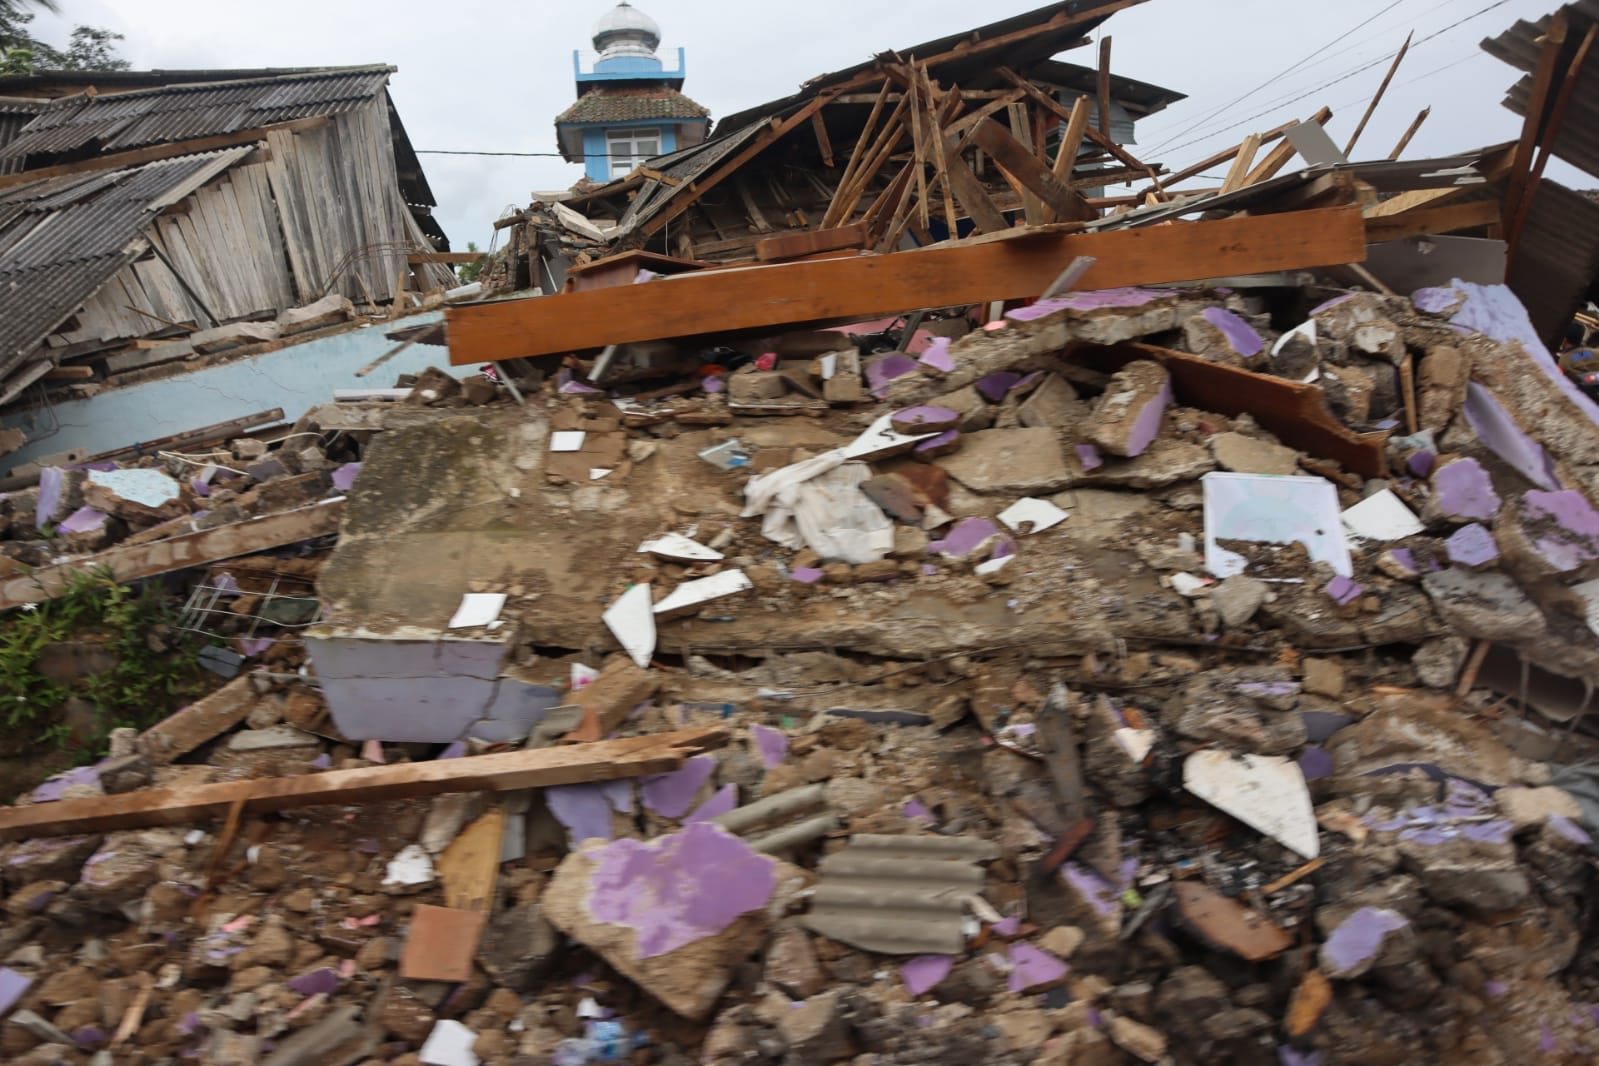 Salah satu rumah warga yang hancur akibat gempa di Kecamatan Cugenang, Kabupaten Cianjur, Jawa Barat pada Sabtu (26/11).